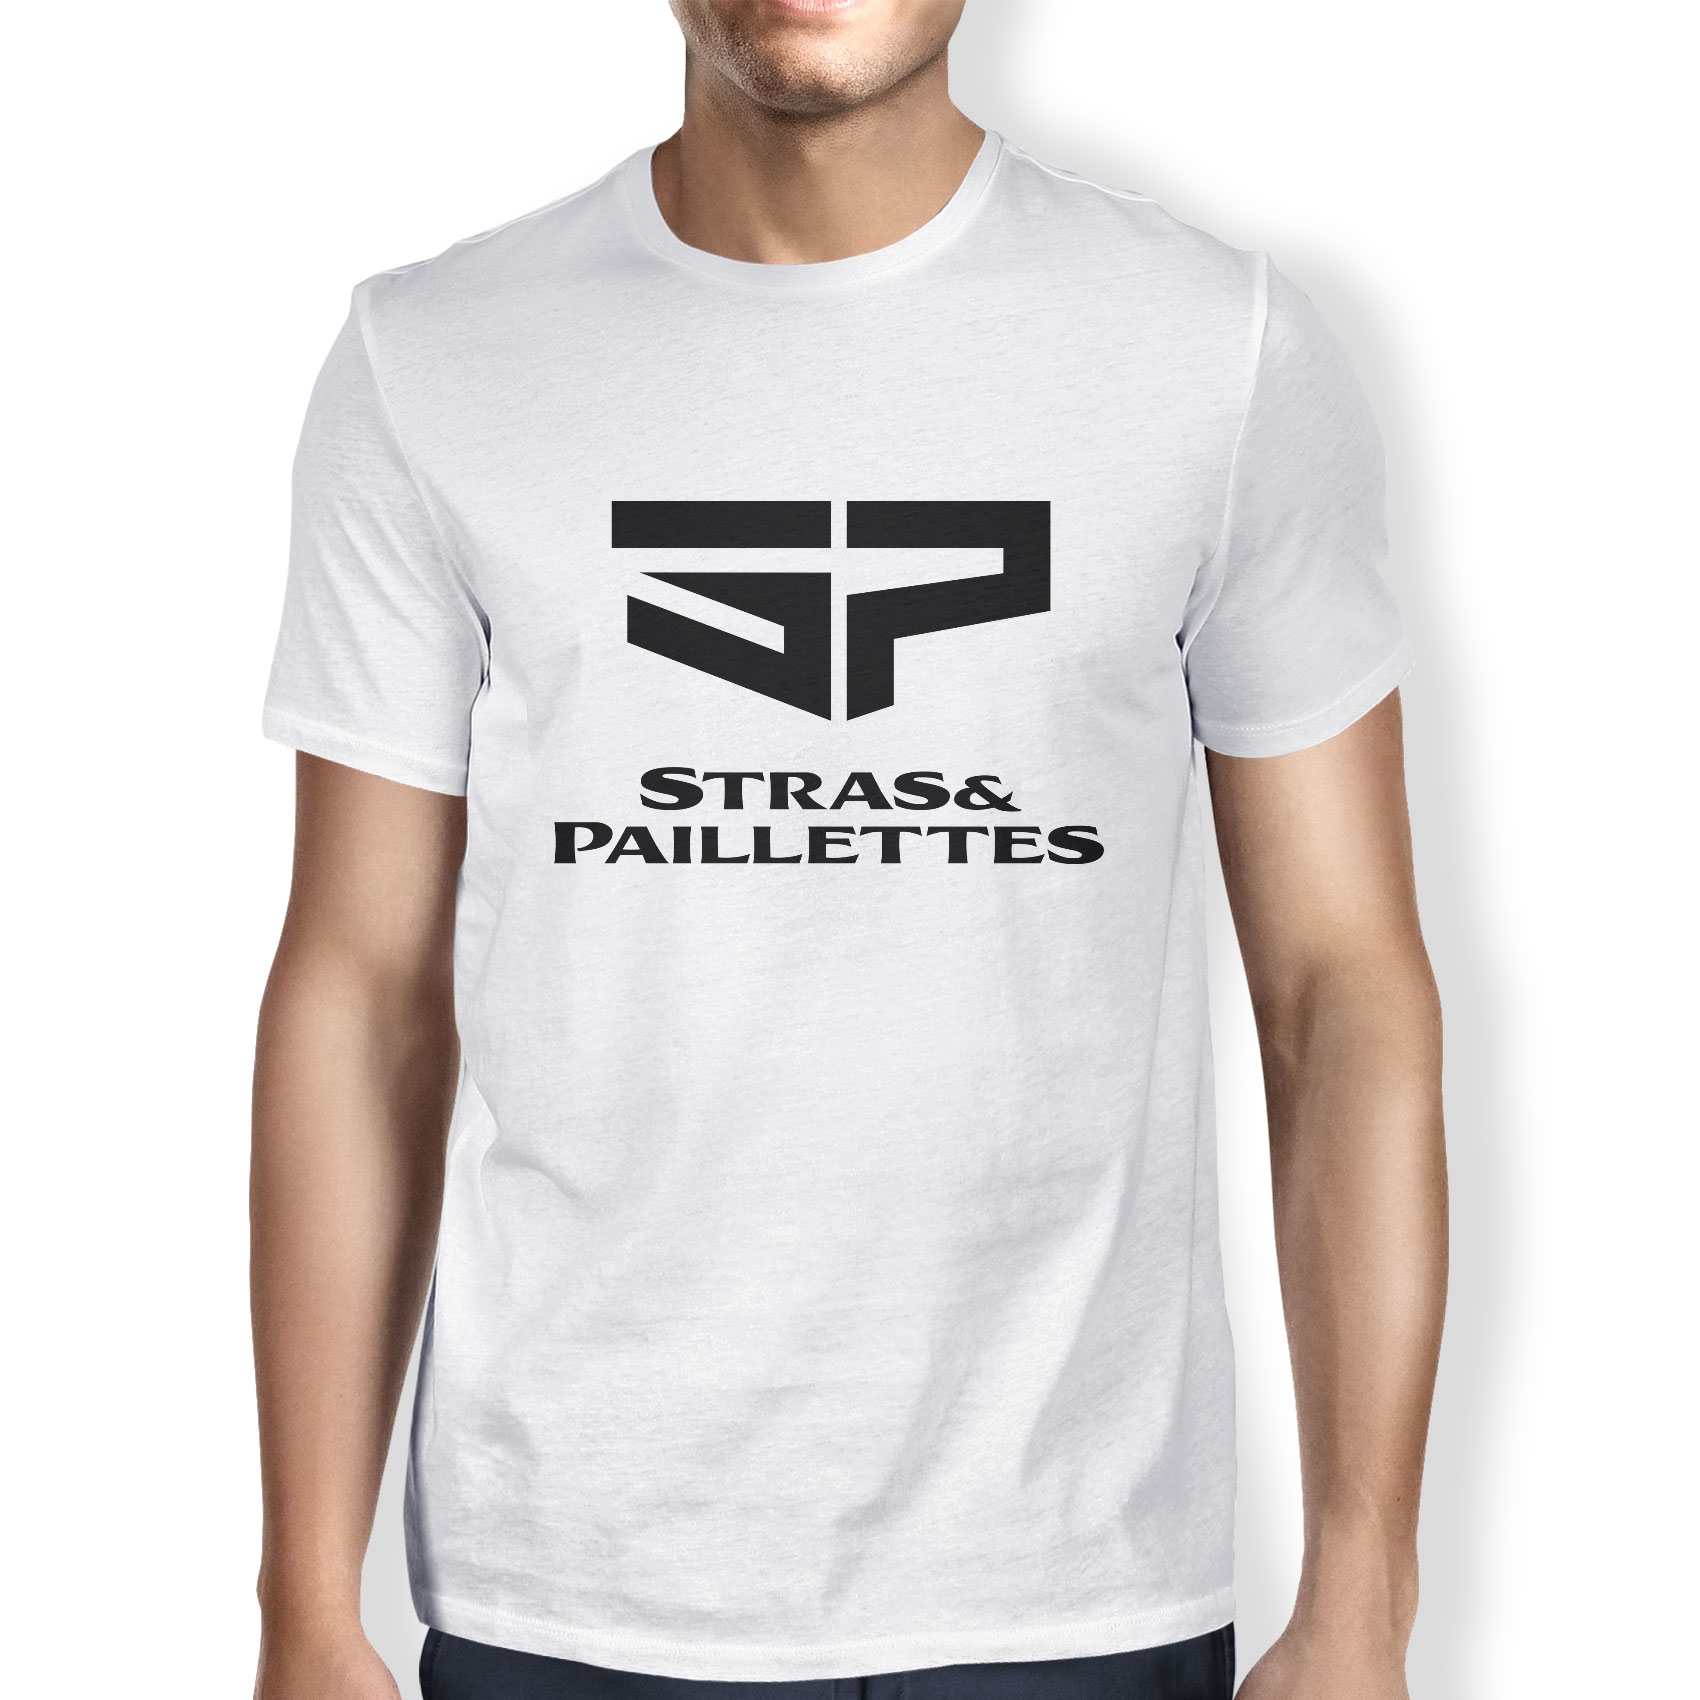 Tshirt Stras & Paillettes modèle 1 de stras & paillettes sur Scredboutique.com